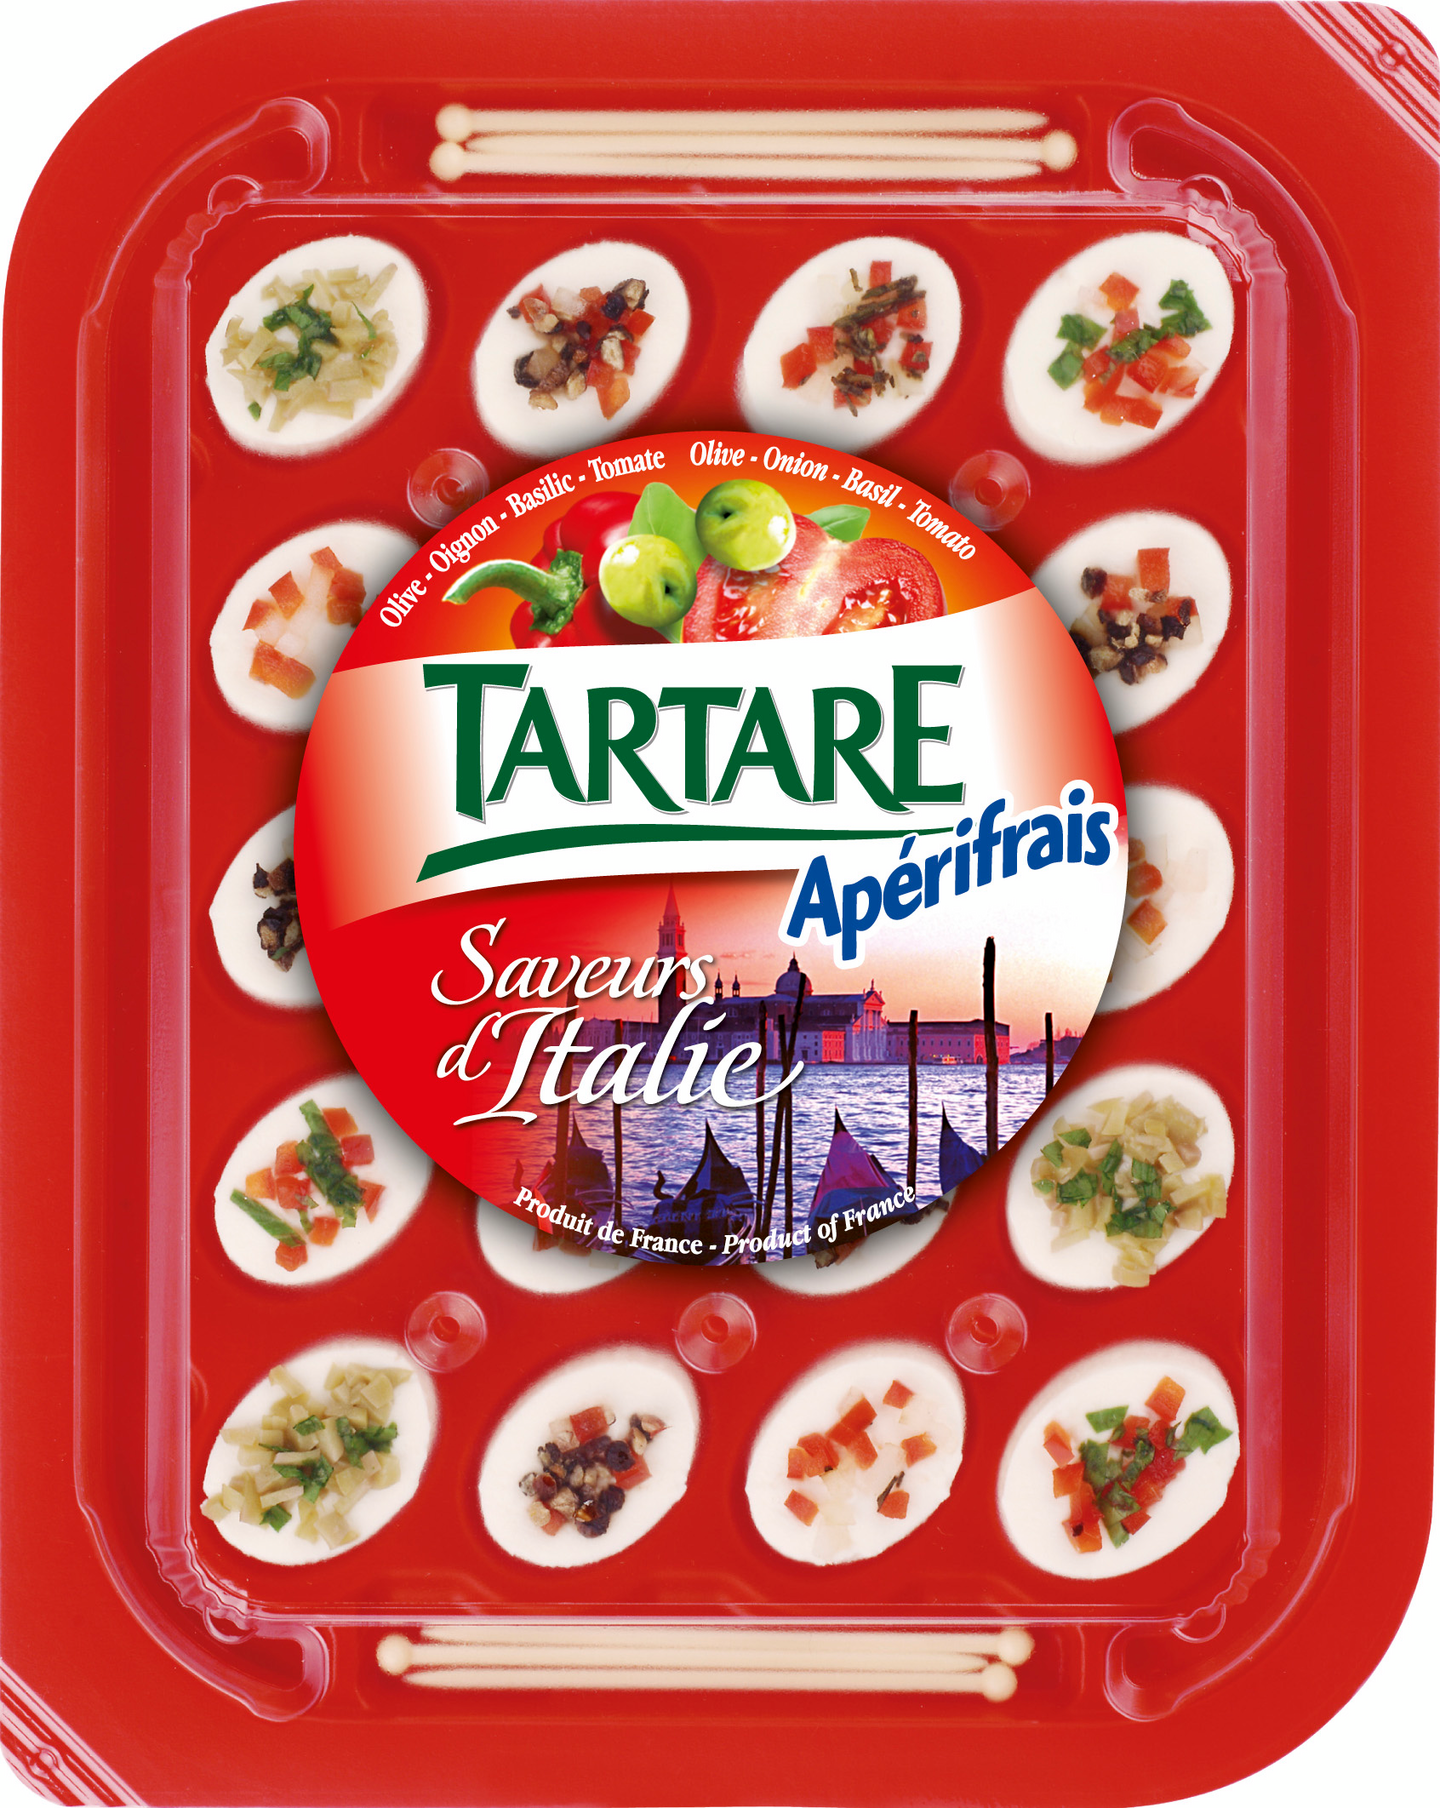 Tartare aperifrais juusto 100g Italie